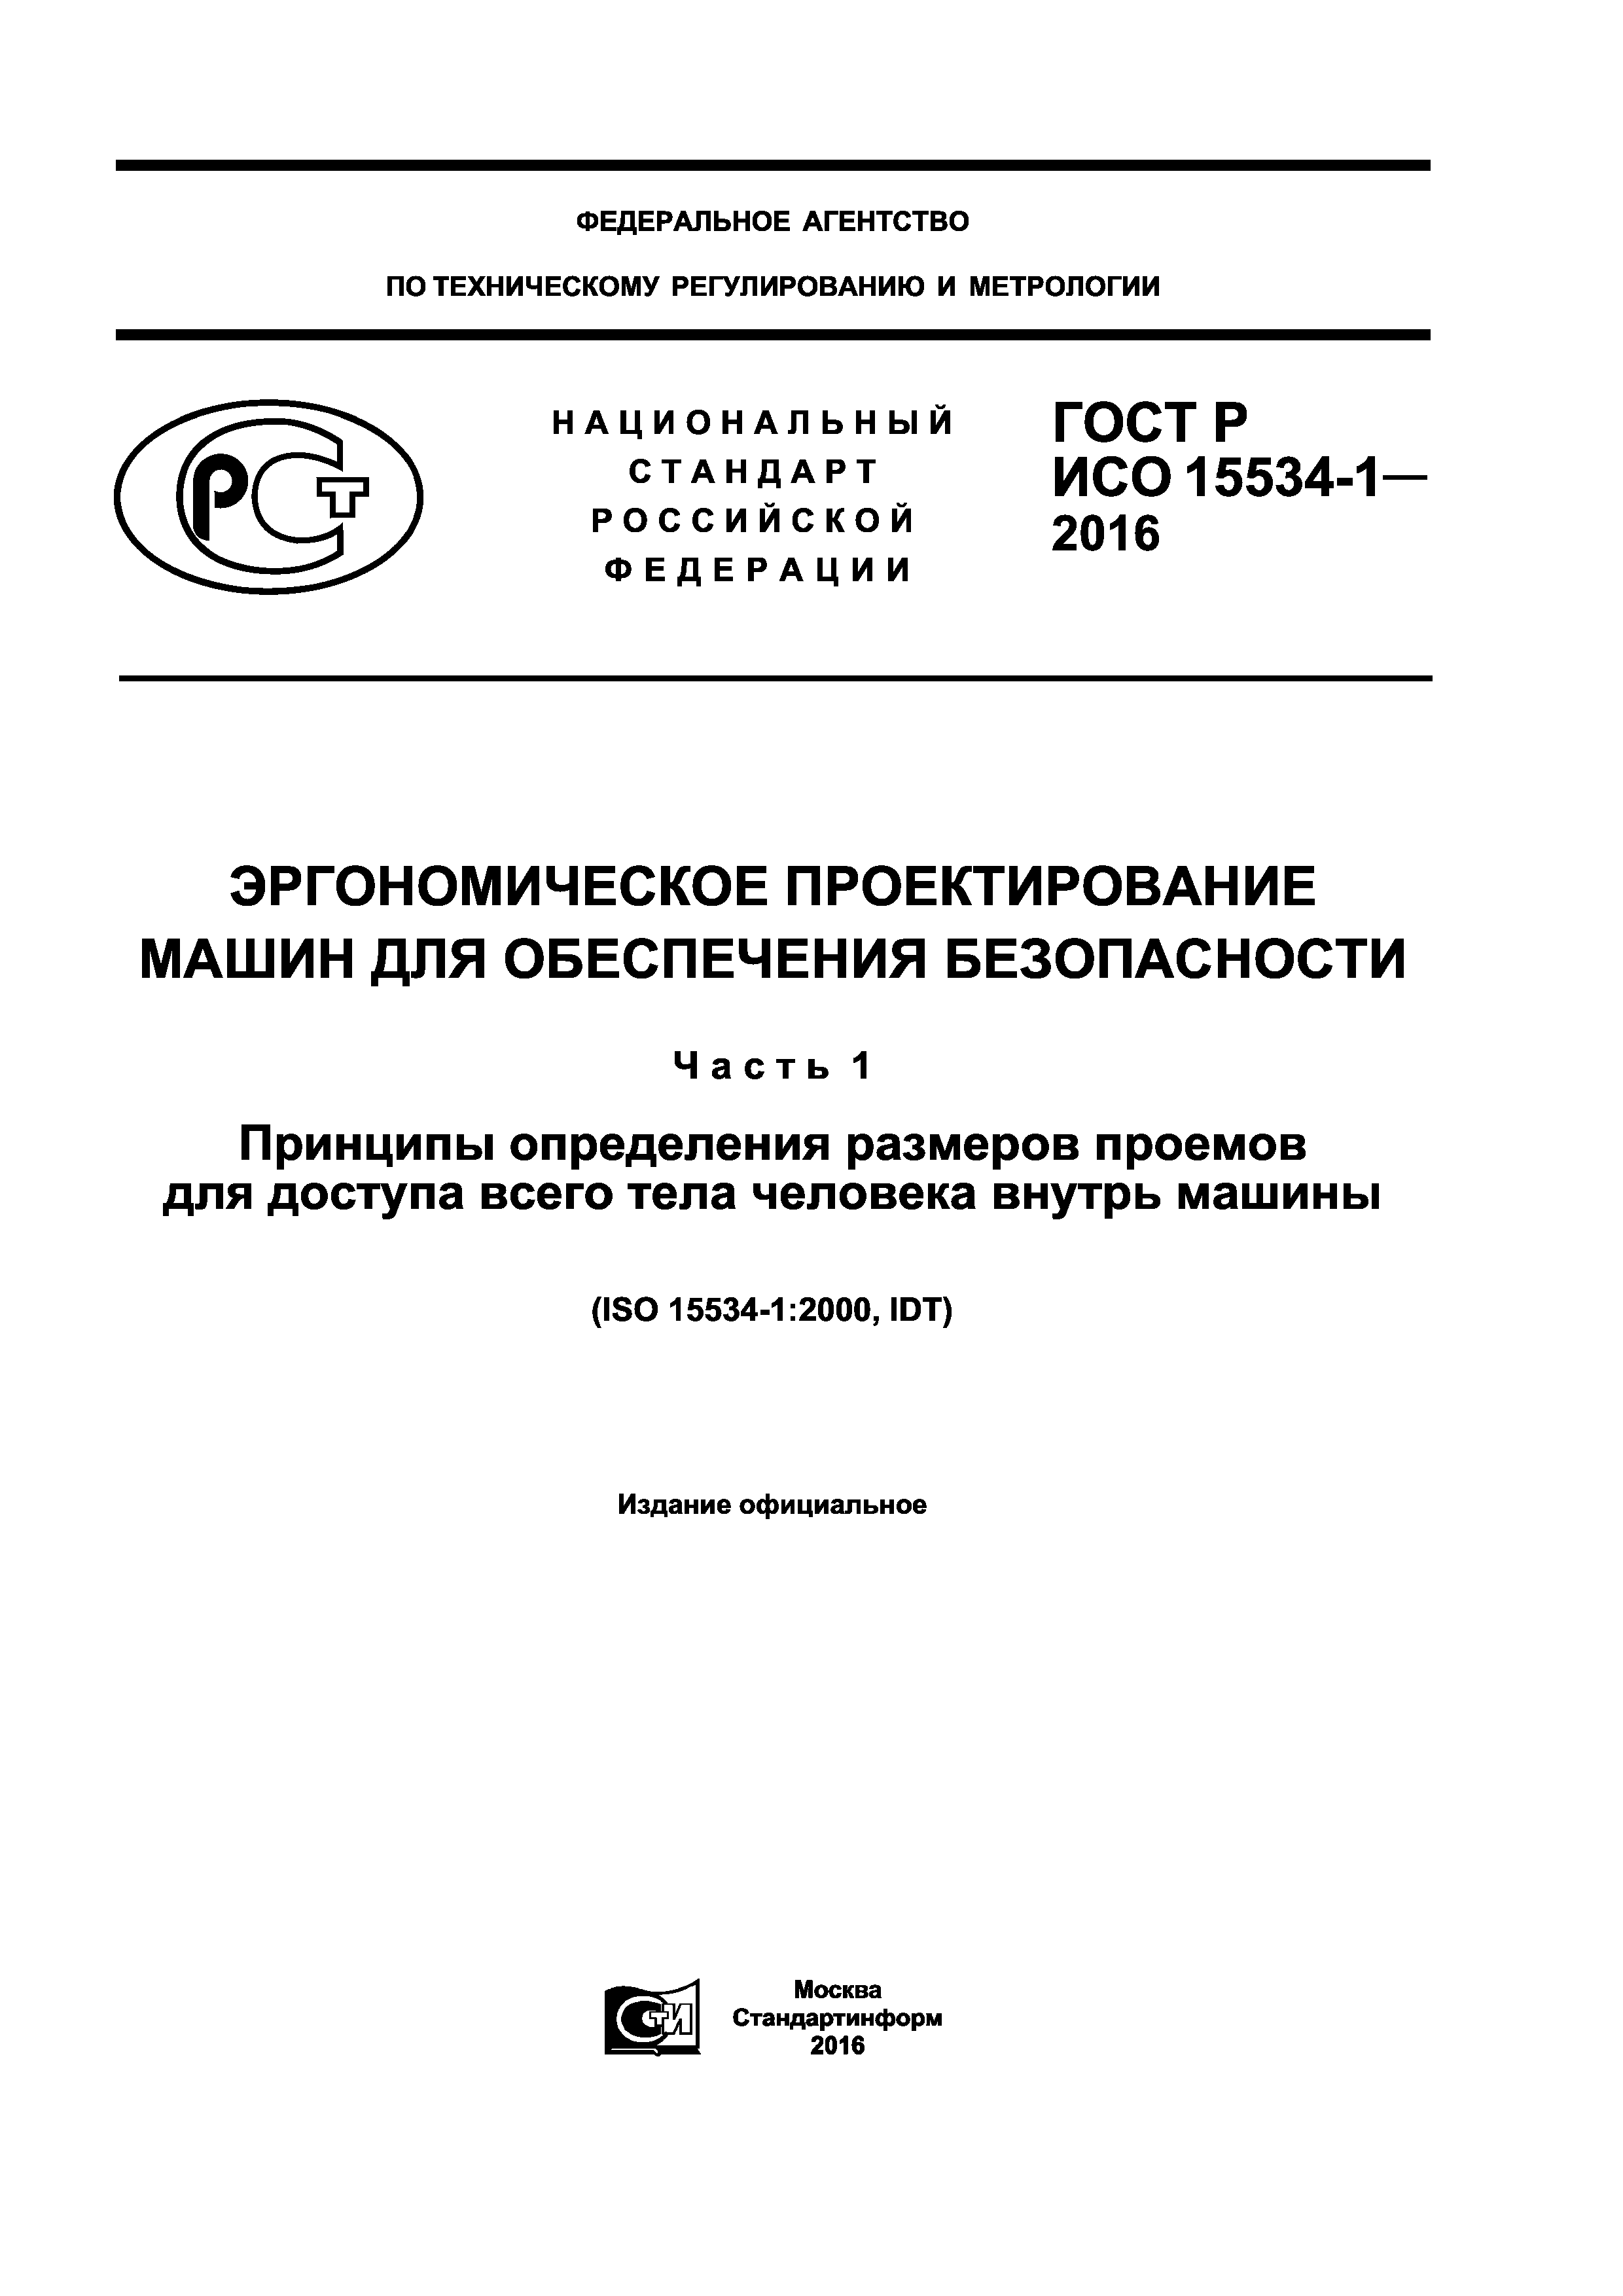 ГОСТ Р ИСО 15534-1-2016